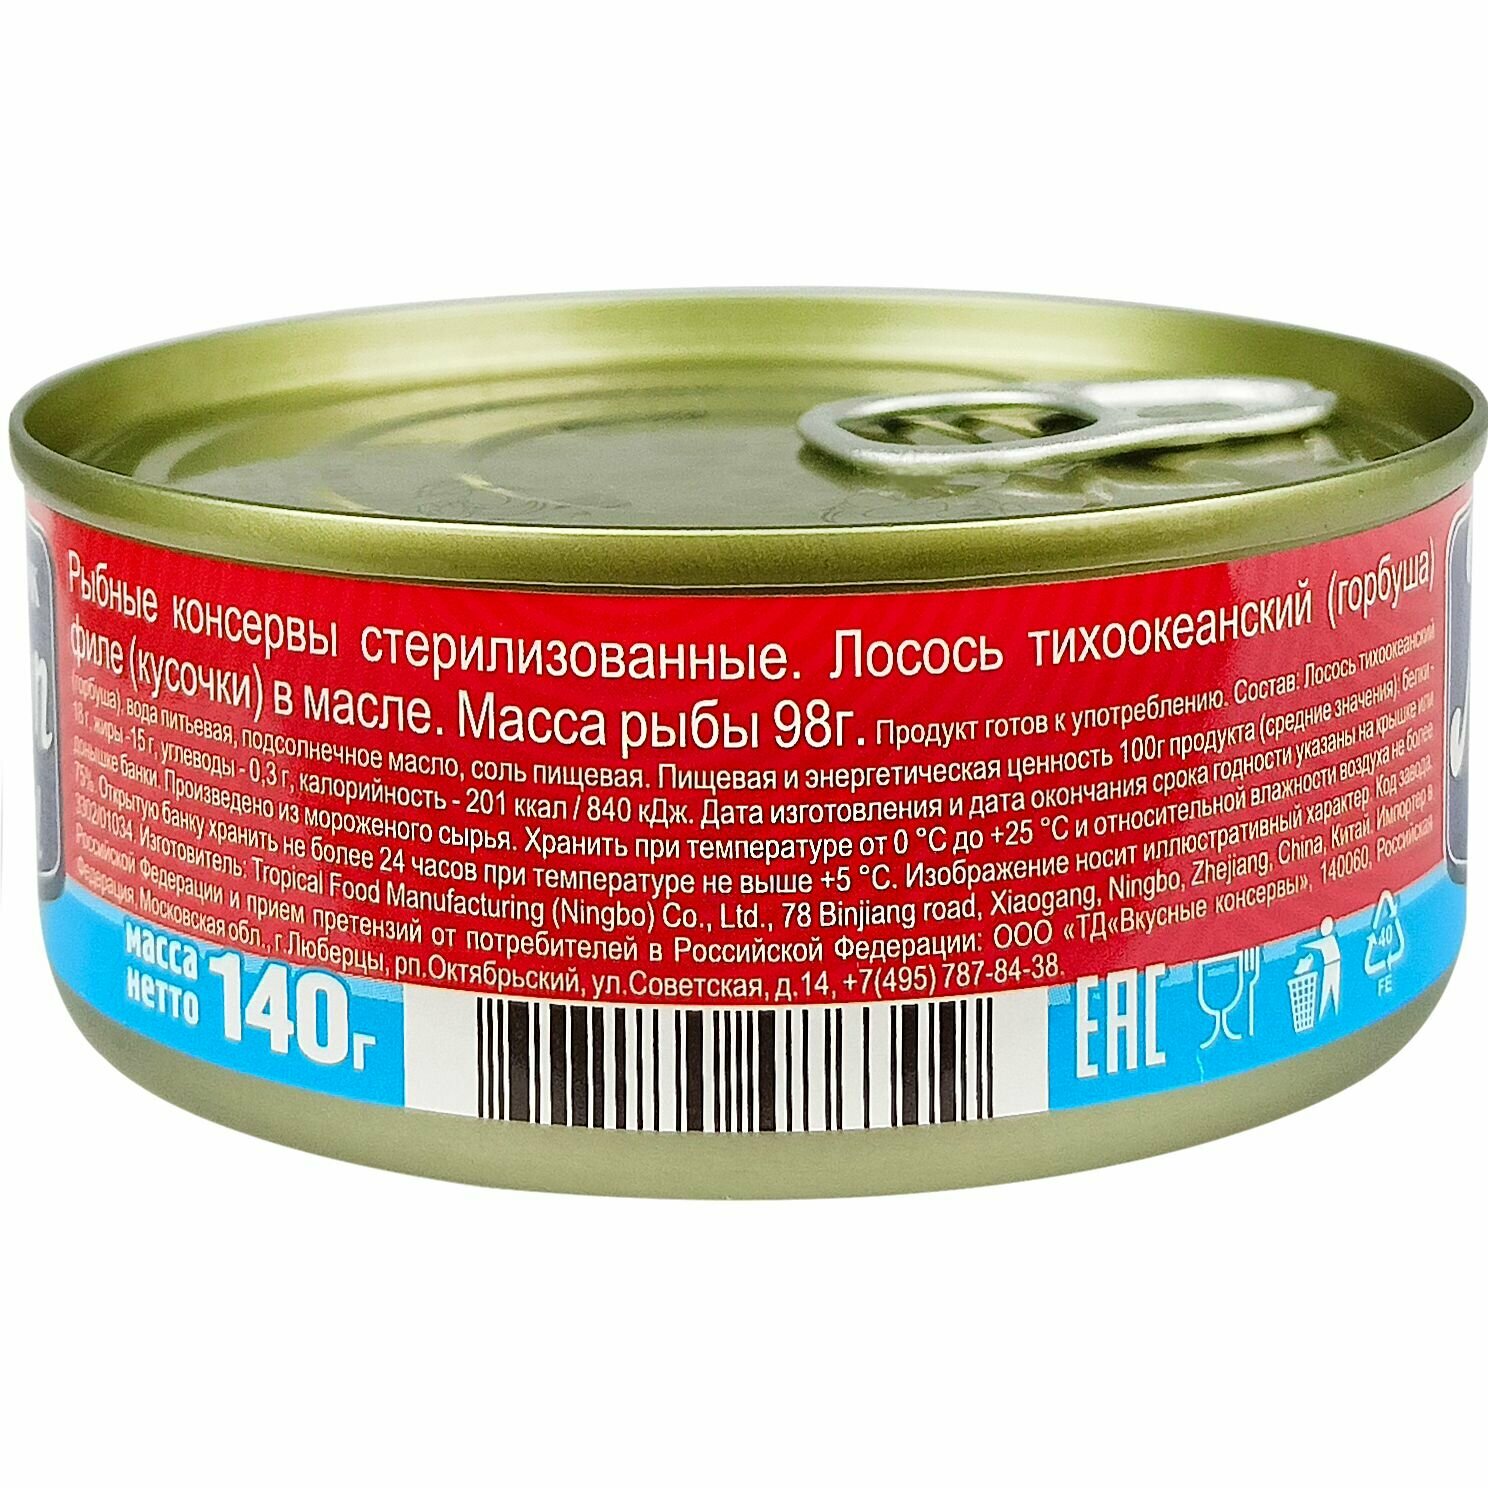 Консервы рыбные "Вкусные консервы" - Лосось тихоокеанский филе в масле, 140 г - 2 шт